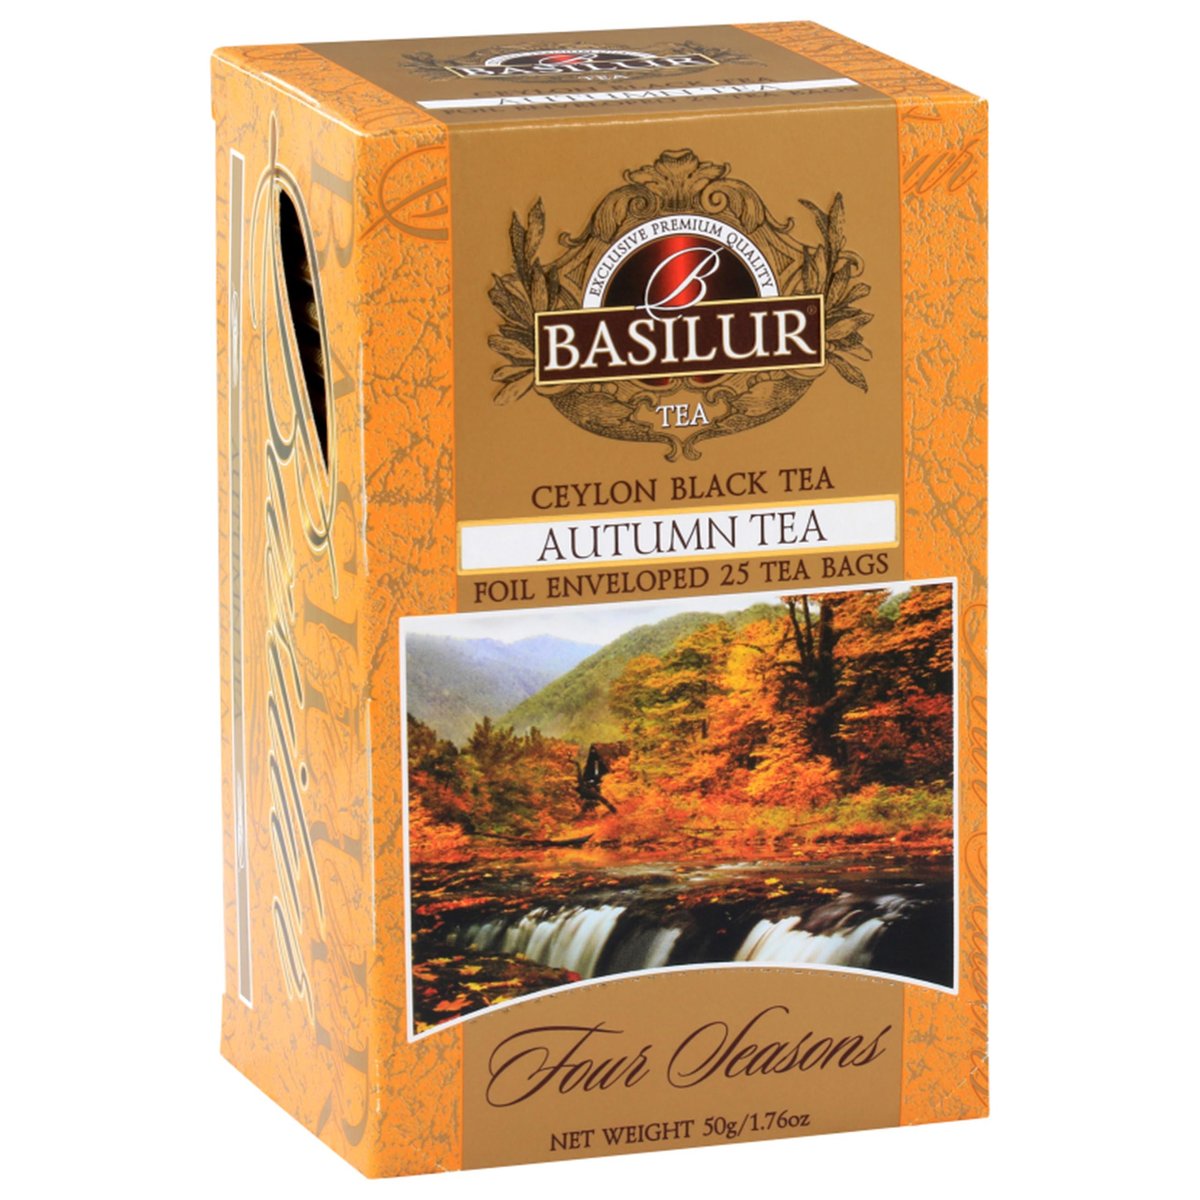 BASILUR Autumn Tea- Cejlońska czarna herbata z dodatkiem klonu, 25x2g x1